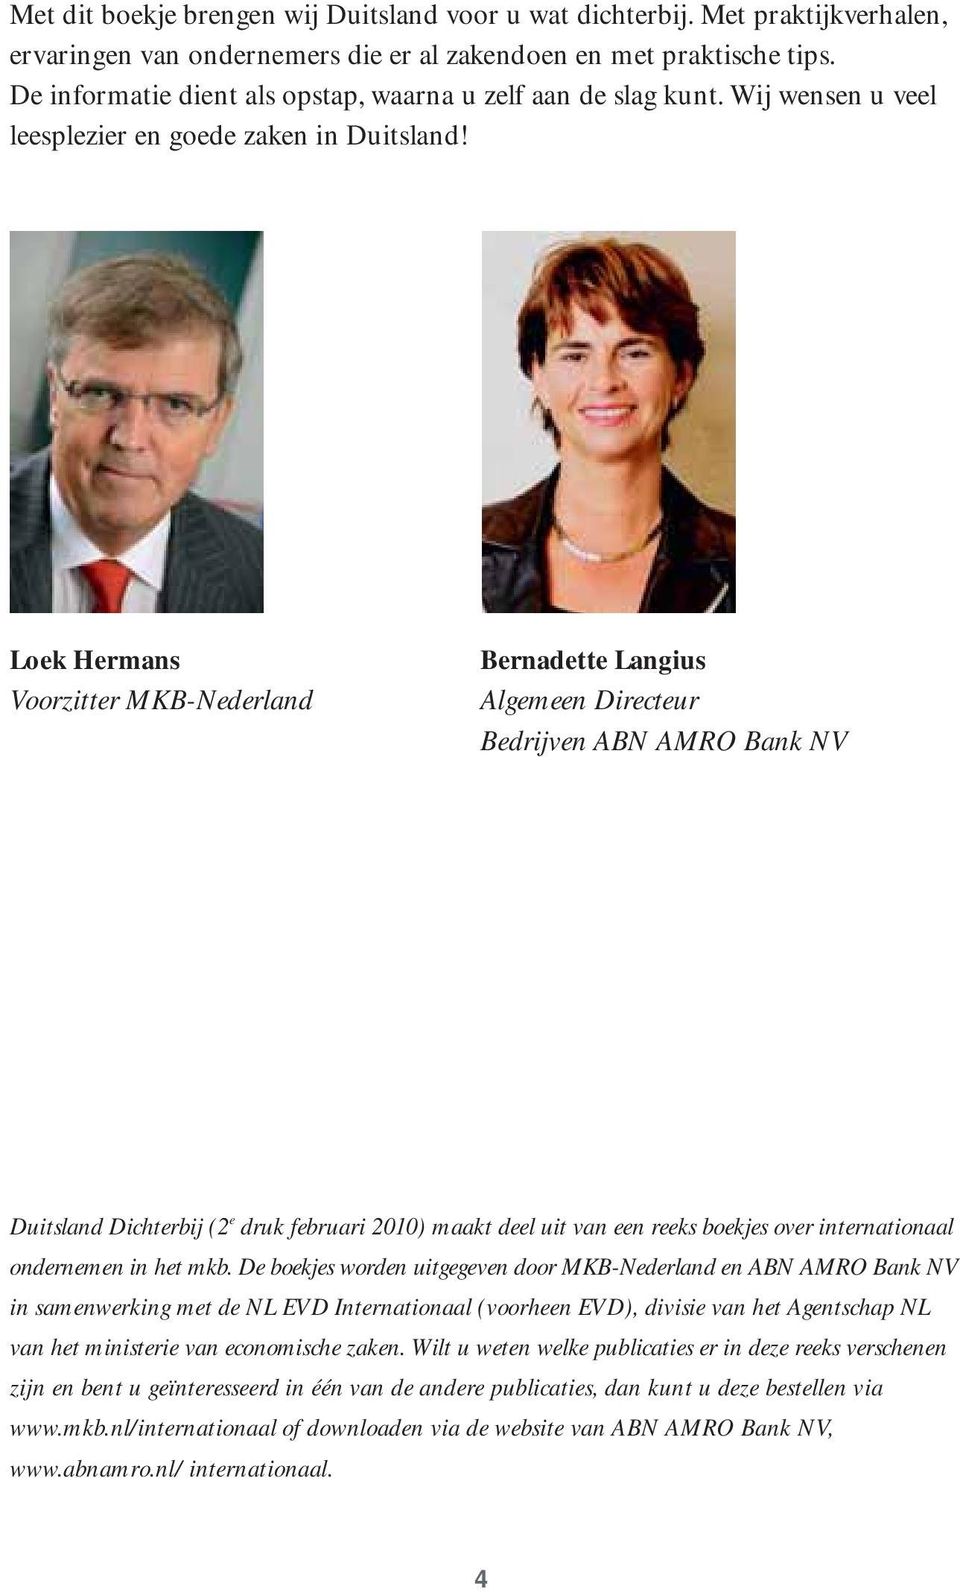 Loek Hermans Voorzitter MKB-Nederland Bernadette Langius Algemeen Directeur Bedrijven ABN AMRO Bank NV Duitsland Dichterbij (2 e druk februari 2010) maakt deel uit van een reeks boekjes over